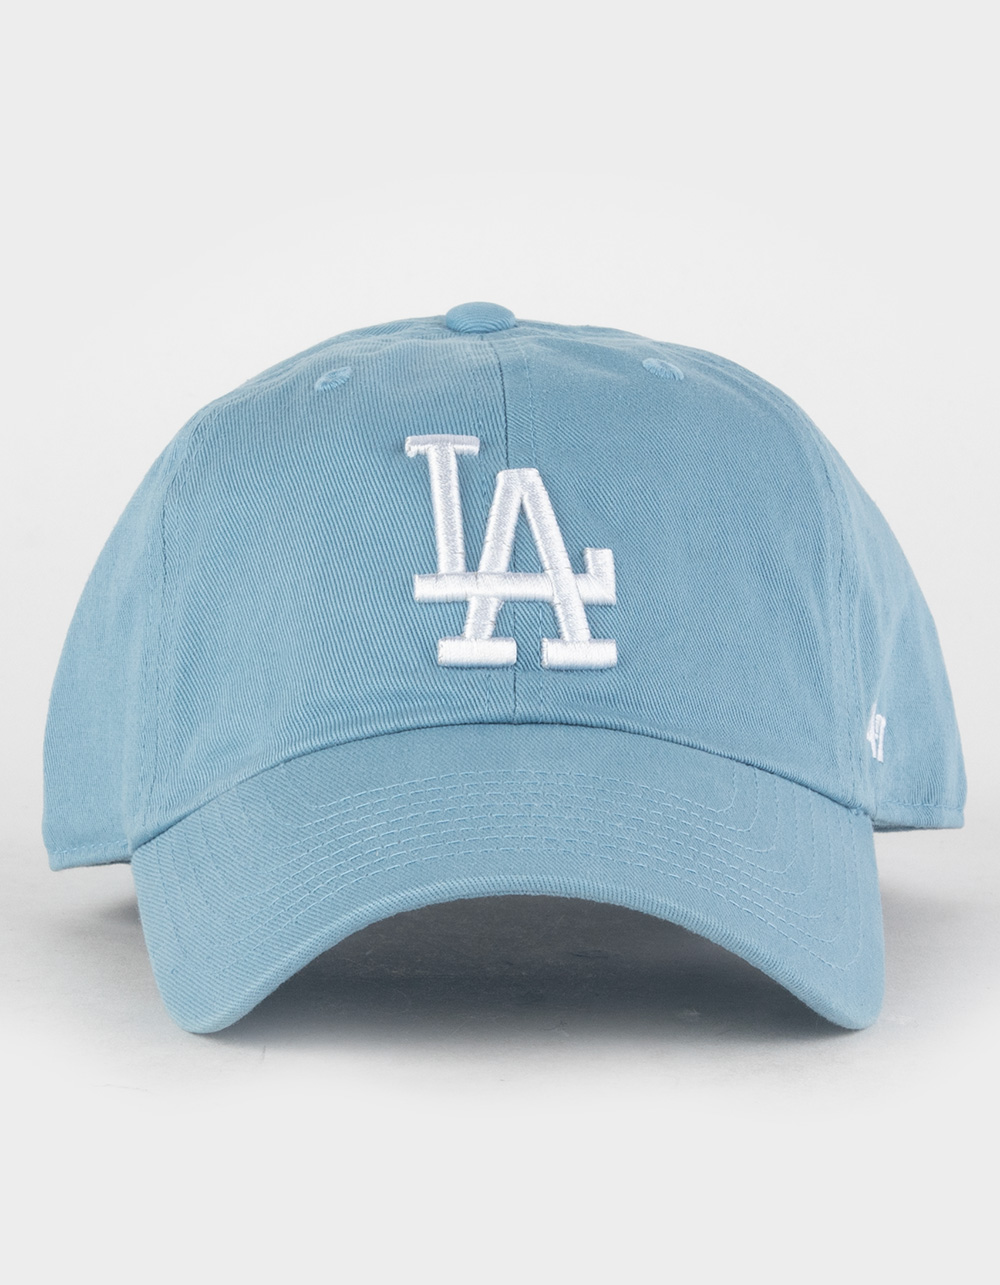 Los Angeles LA Dodgers Genuine Merch Fan Favorite Strapback Hat Cap Blue